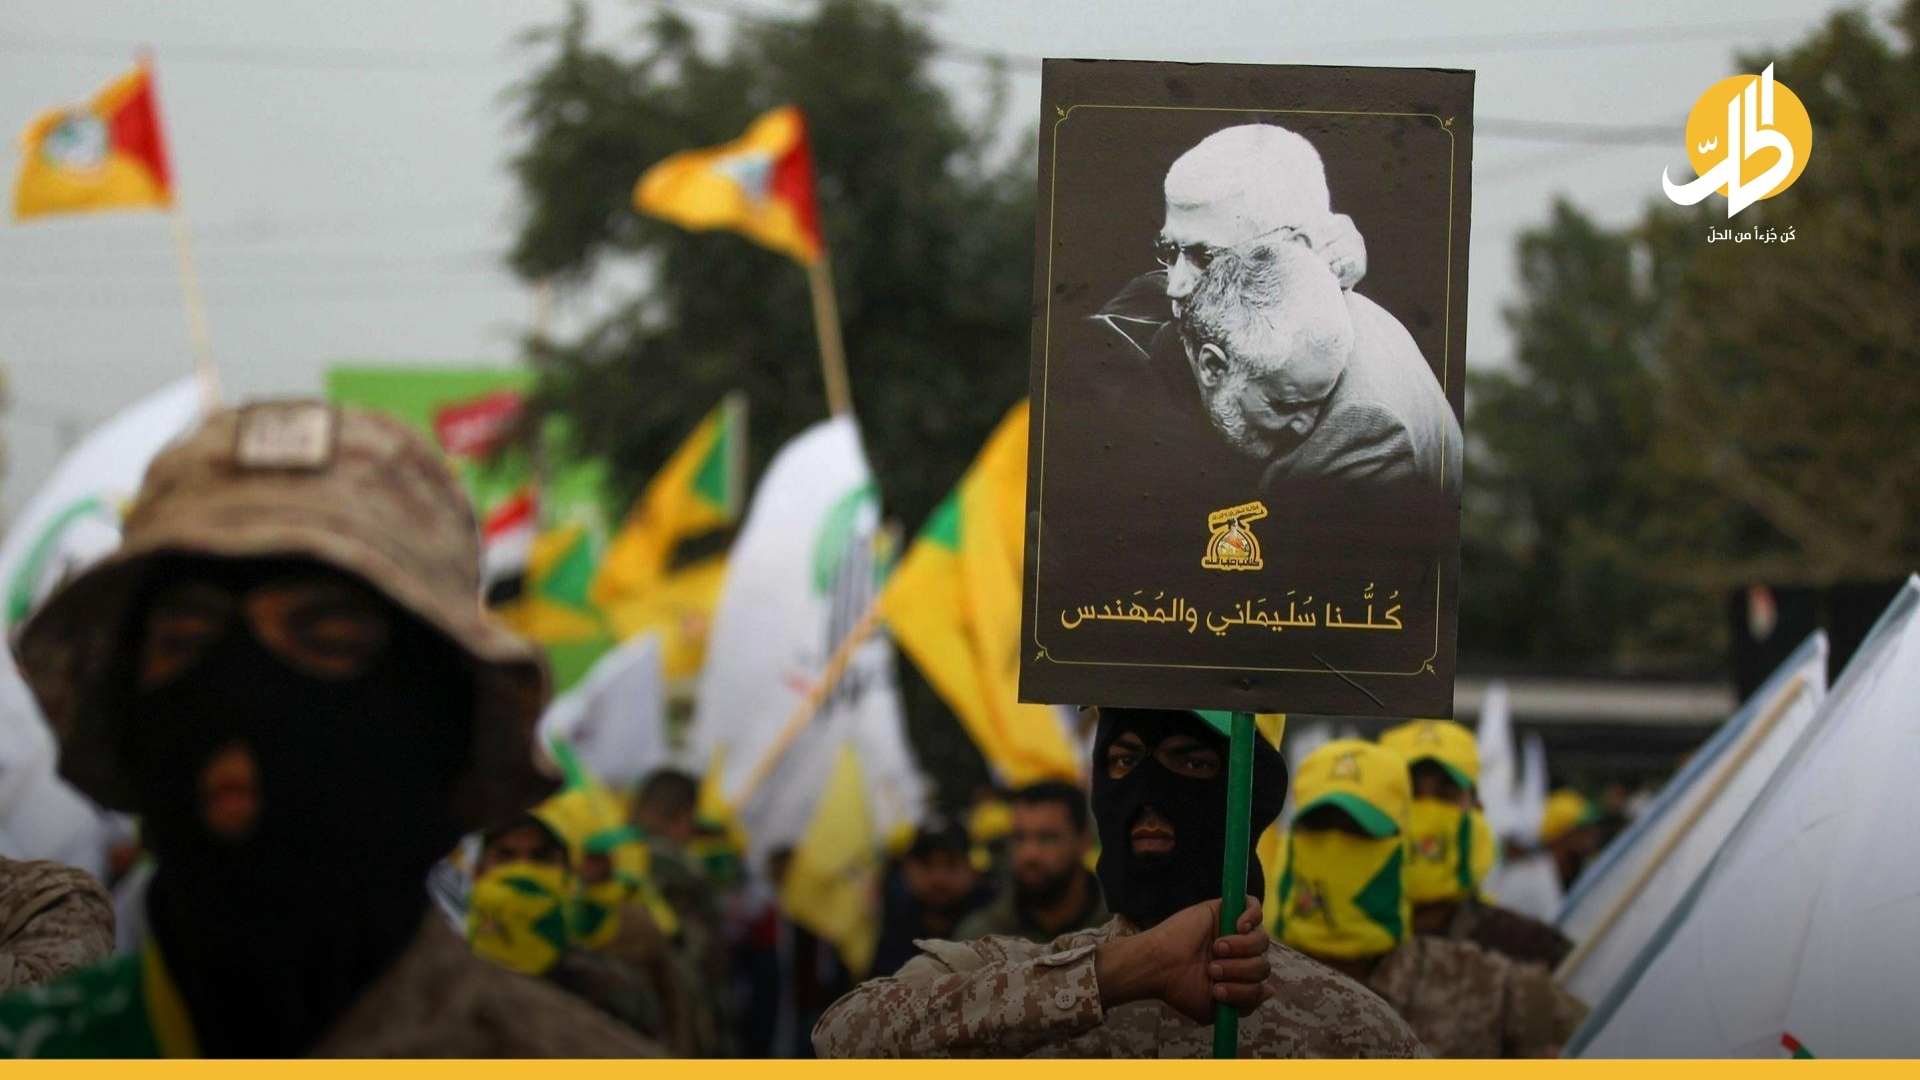 الميليشيات العراقية تهدد بـ “مواجهة حاسمة” مع واشنطن.. والأخيرة ترد